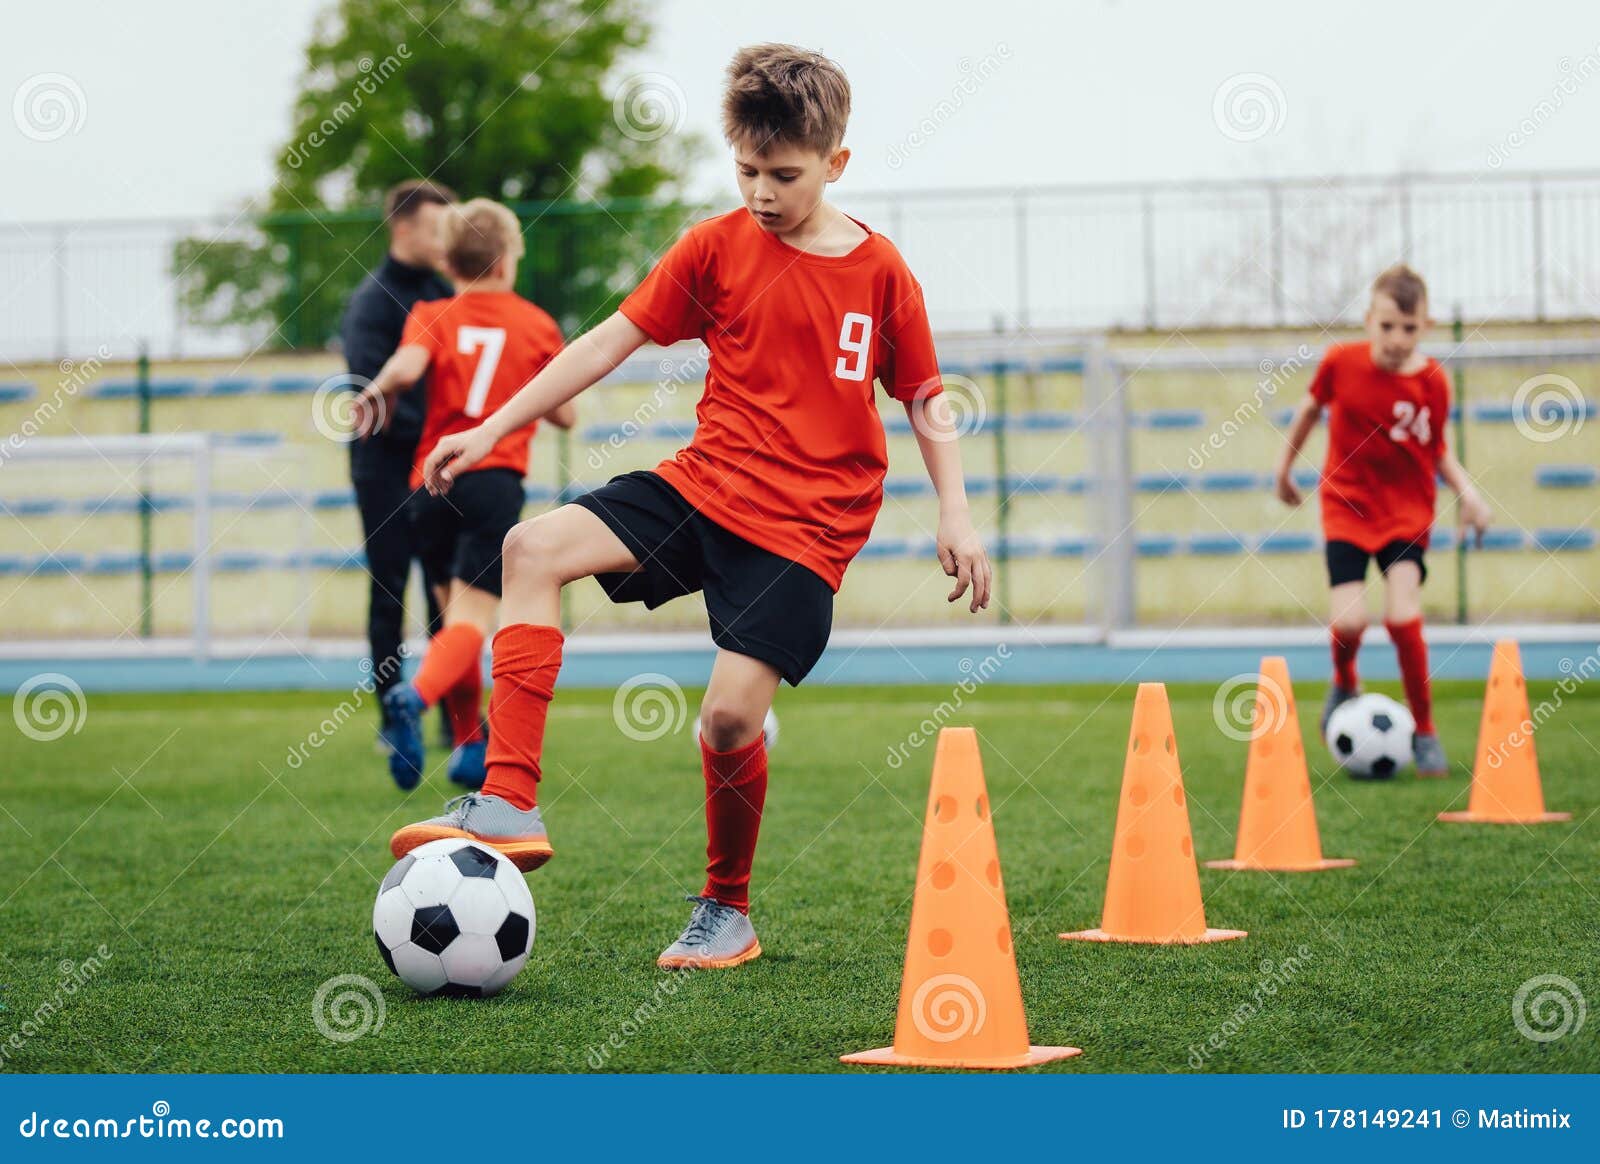 Niño En Equipo De Fútbol Infantil En Entrenamiento. Niños Practicando Al  Aire Libre Con Balones De Fútbol Imagen de archivo - Imagen de juego,  balompié: 178149241